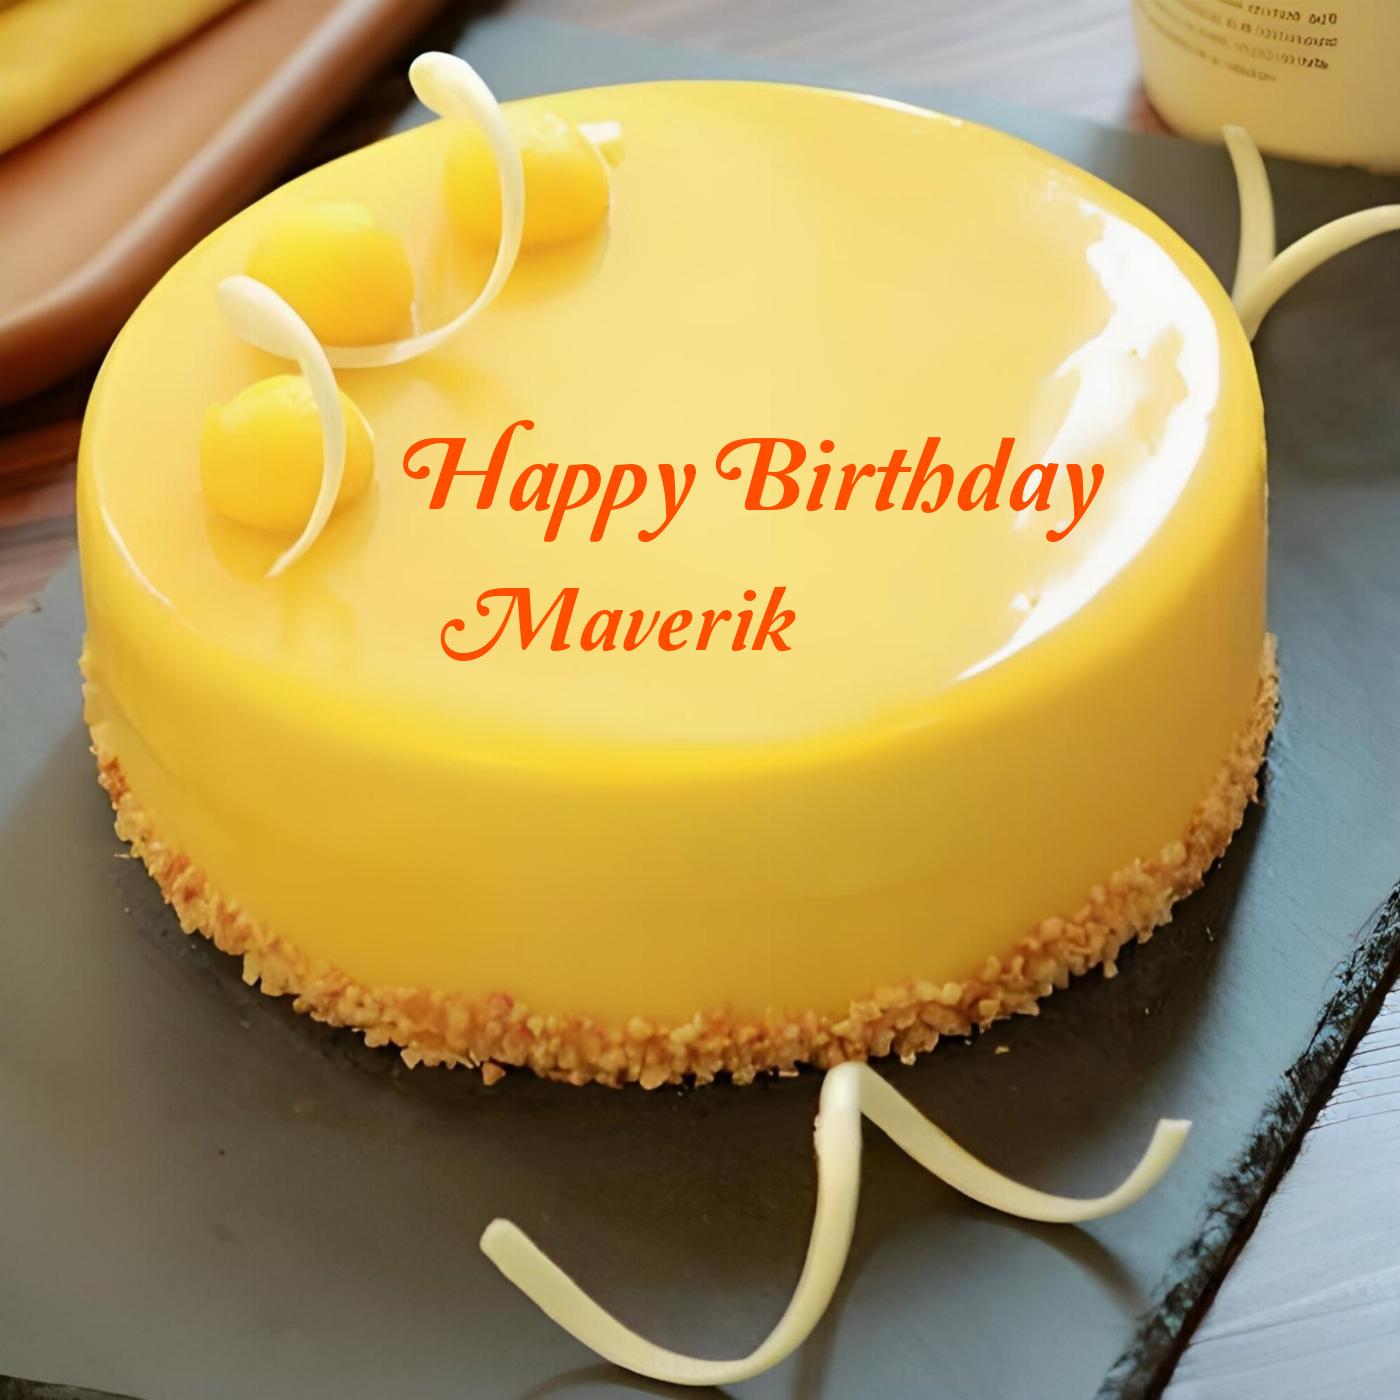 Happy Birthday Maverik Beautiful Yellow Cake